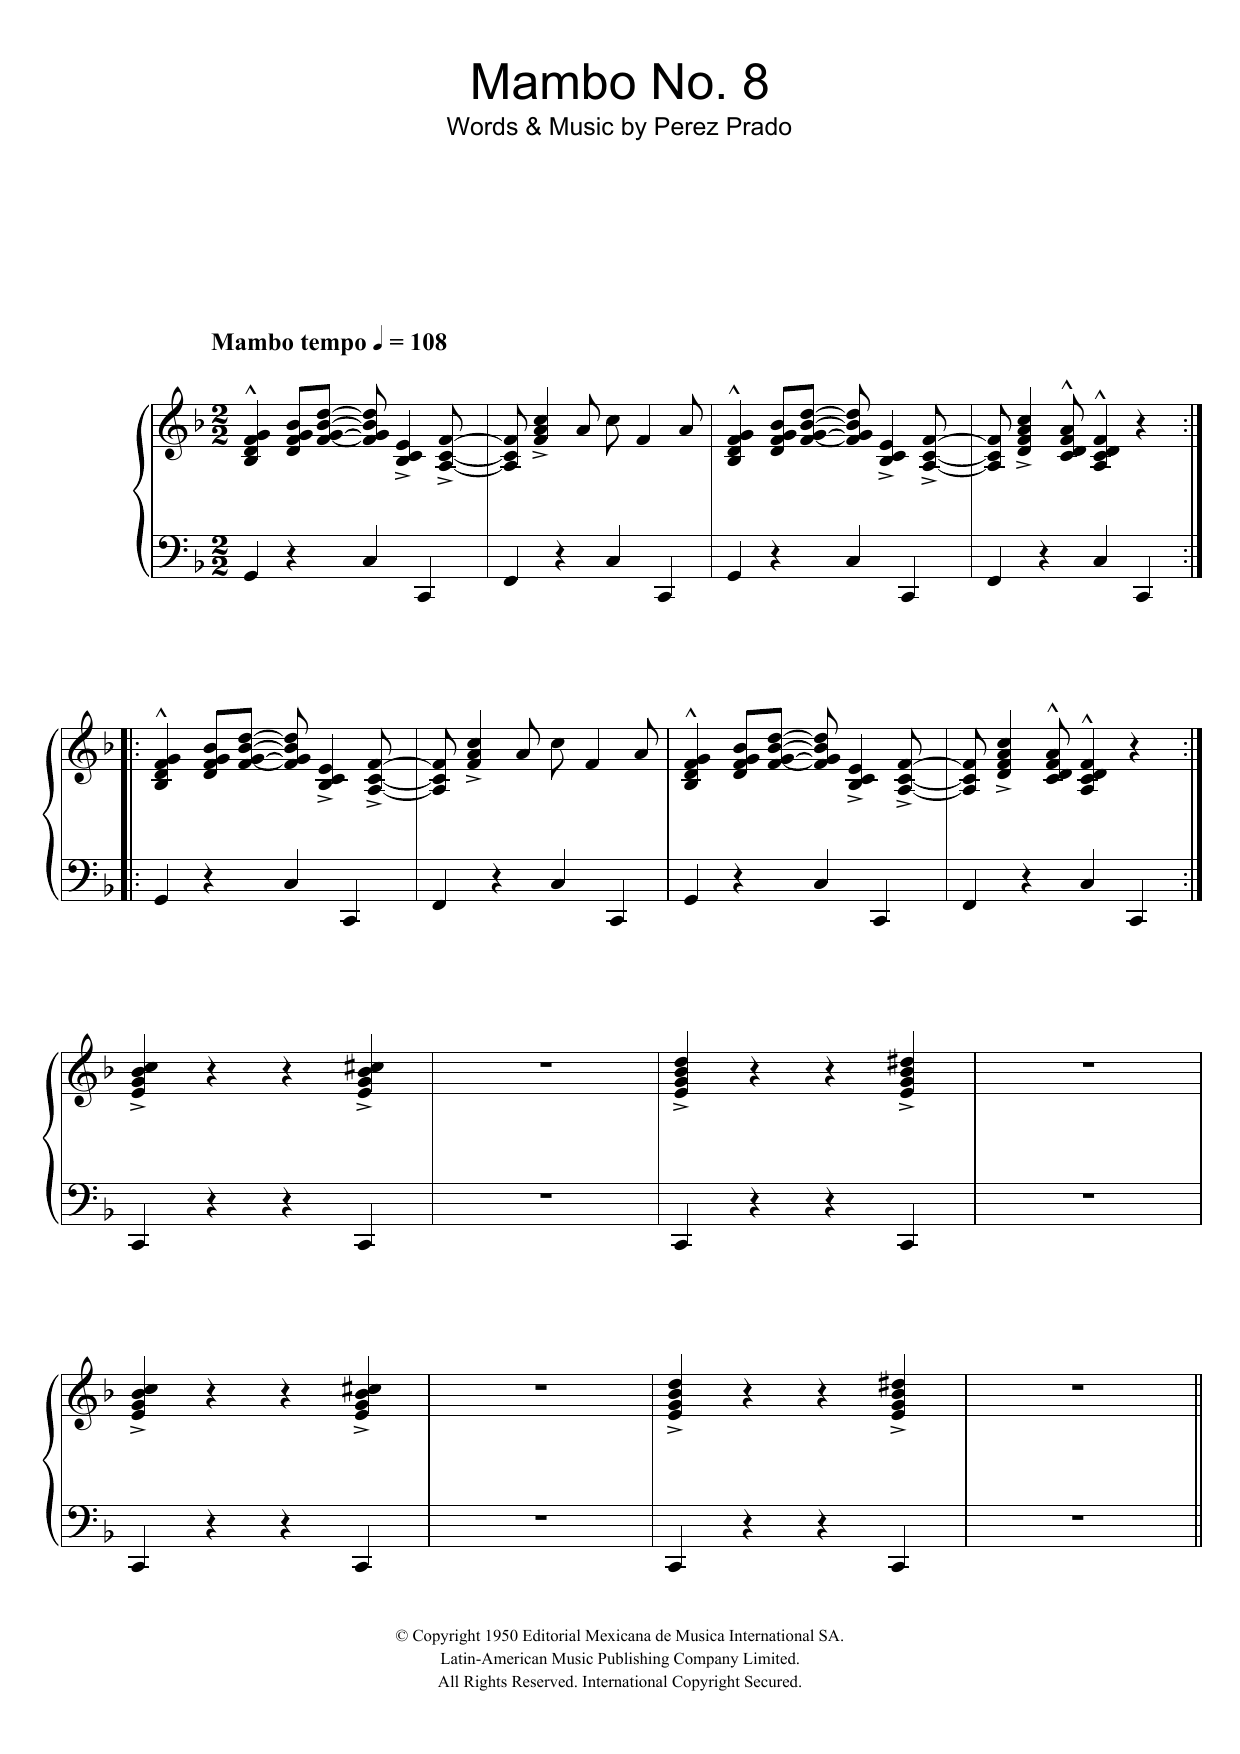 Perez Prado Mambo No. 8 Sheet Music Notes & Chords for Piano - Download or Print PDF